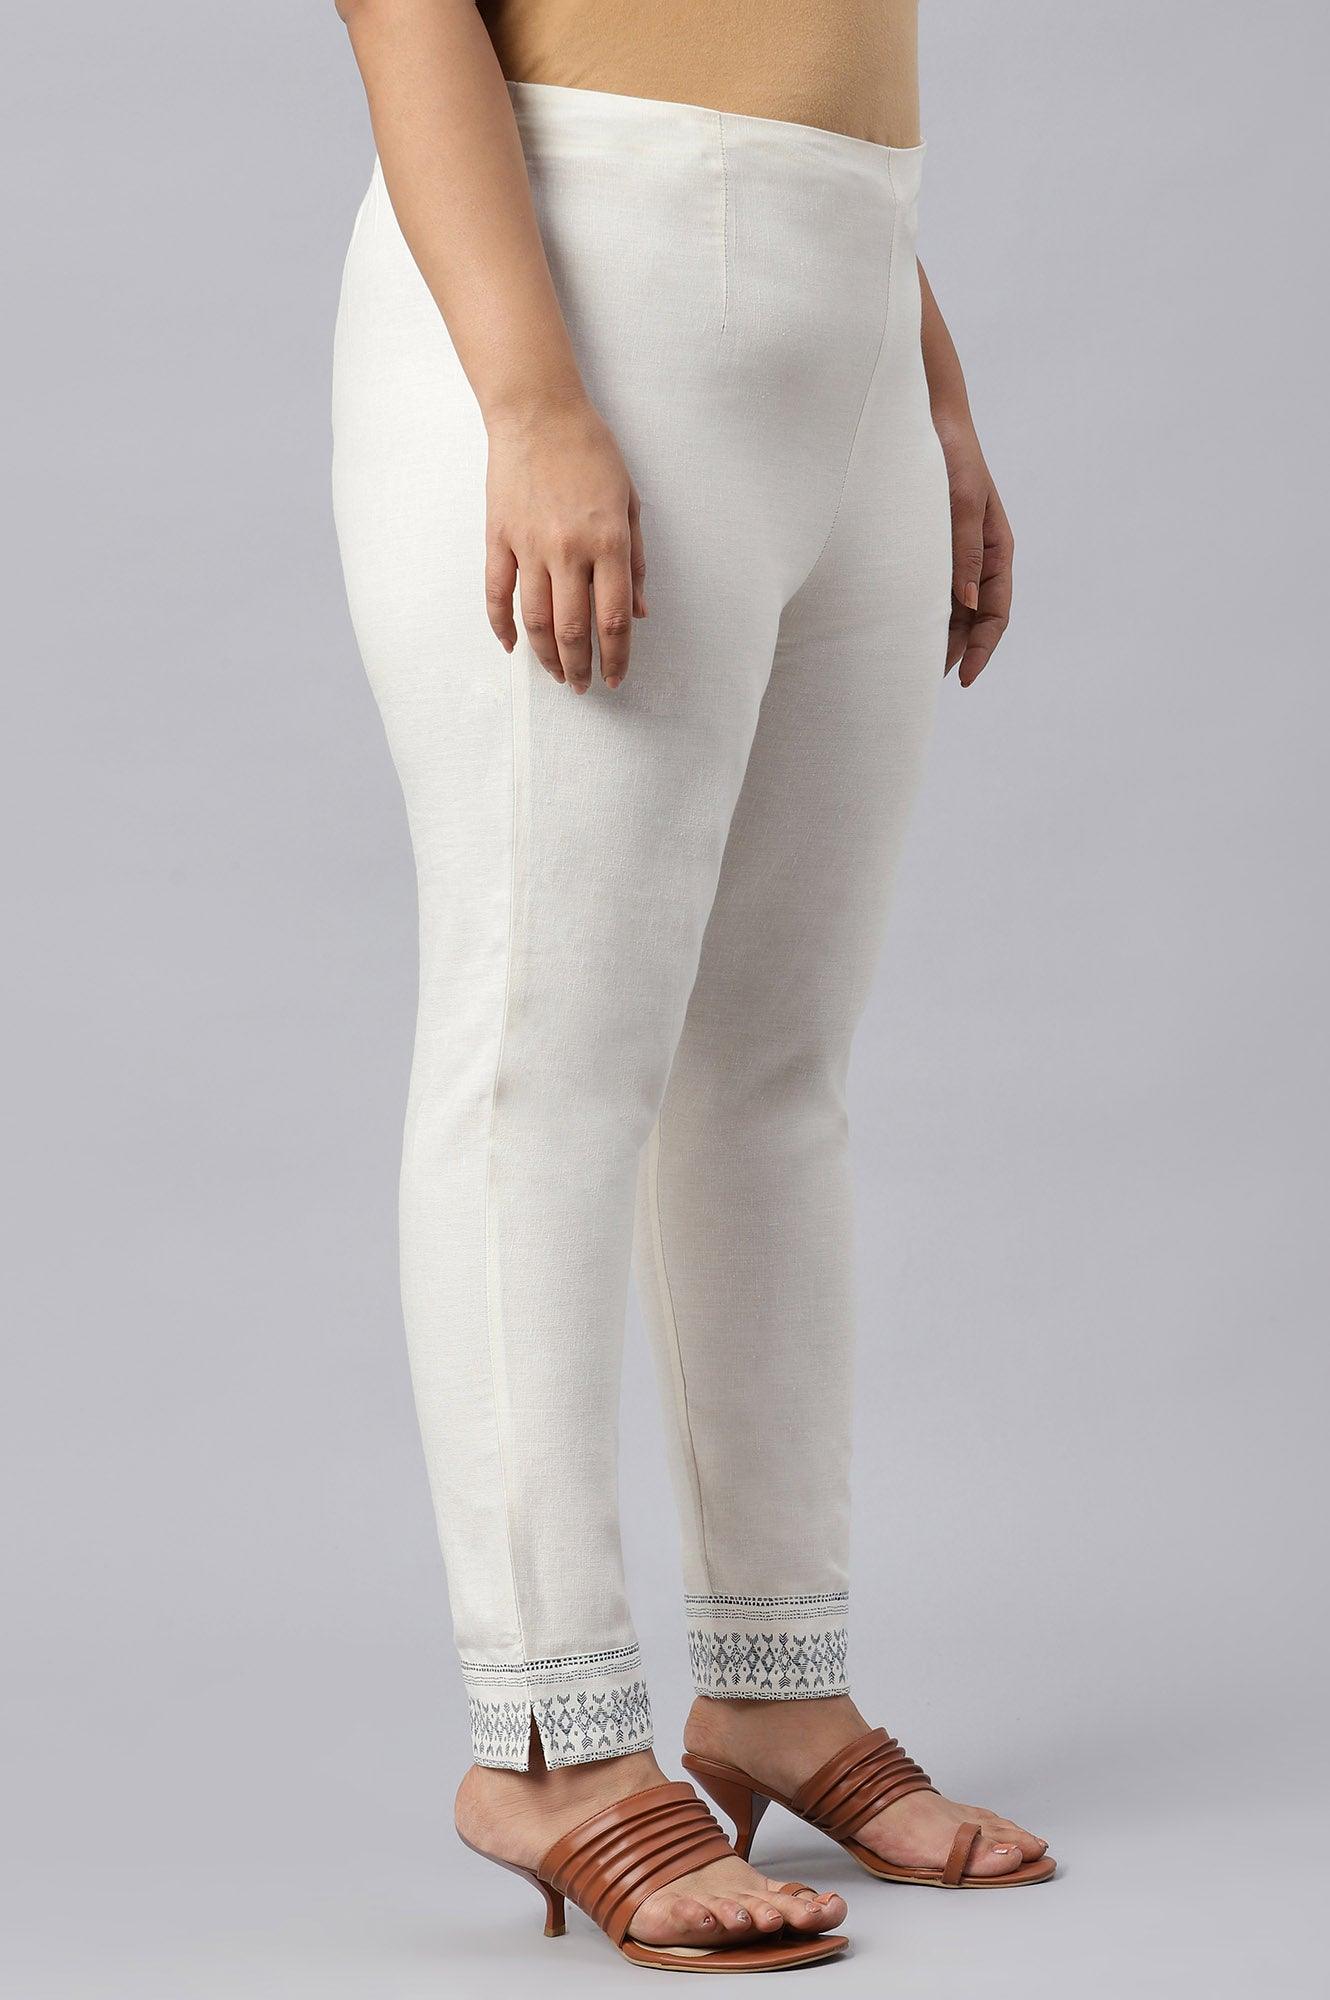 Plus Size Lily White Cotton Blend Slim Pants - wforwoman